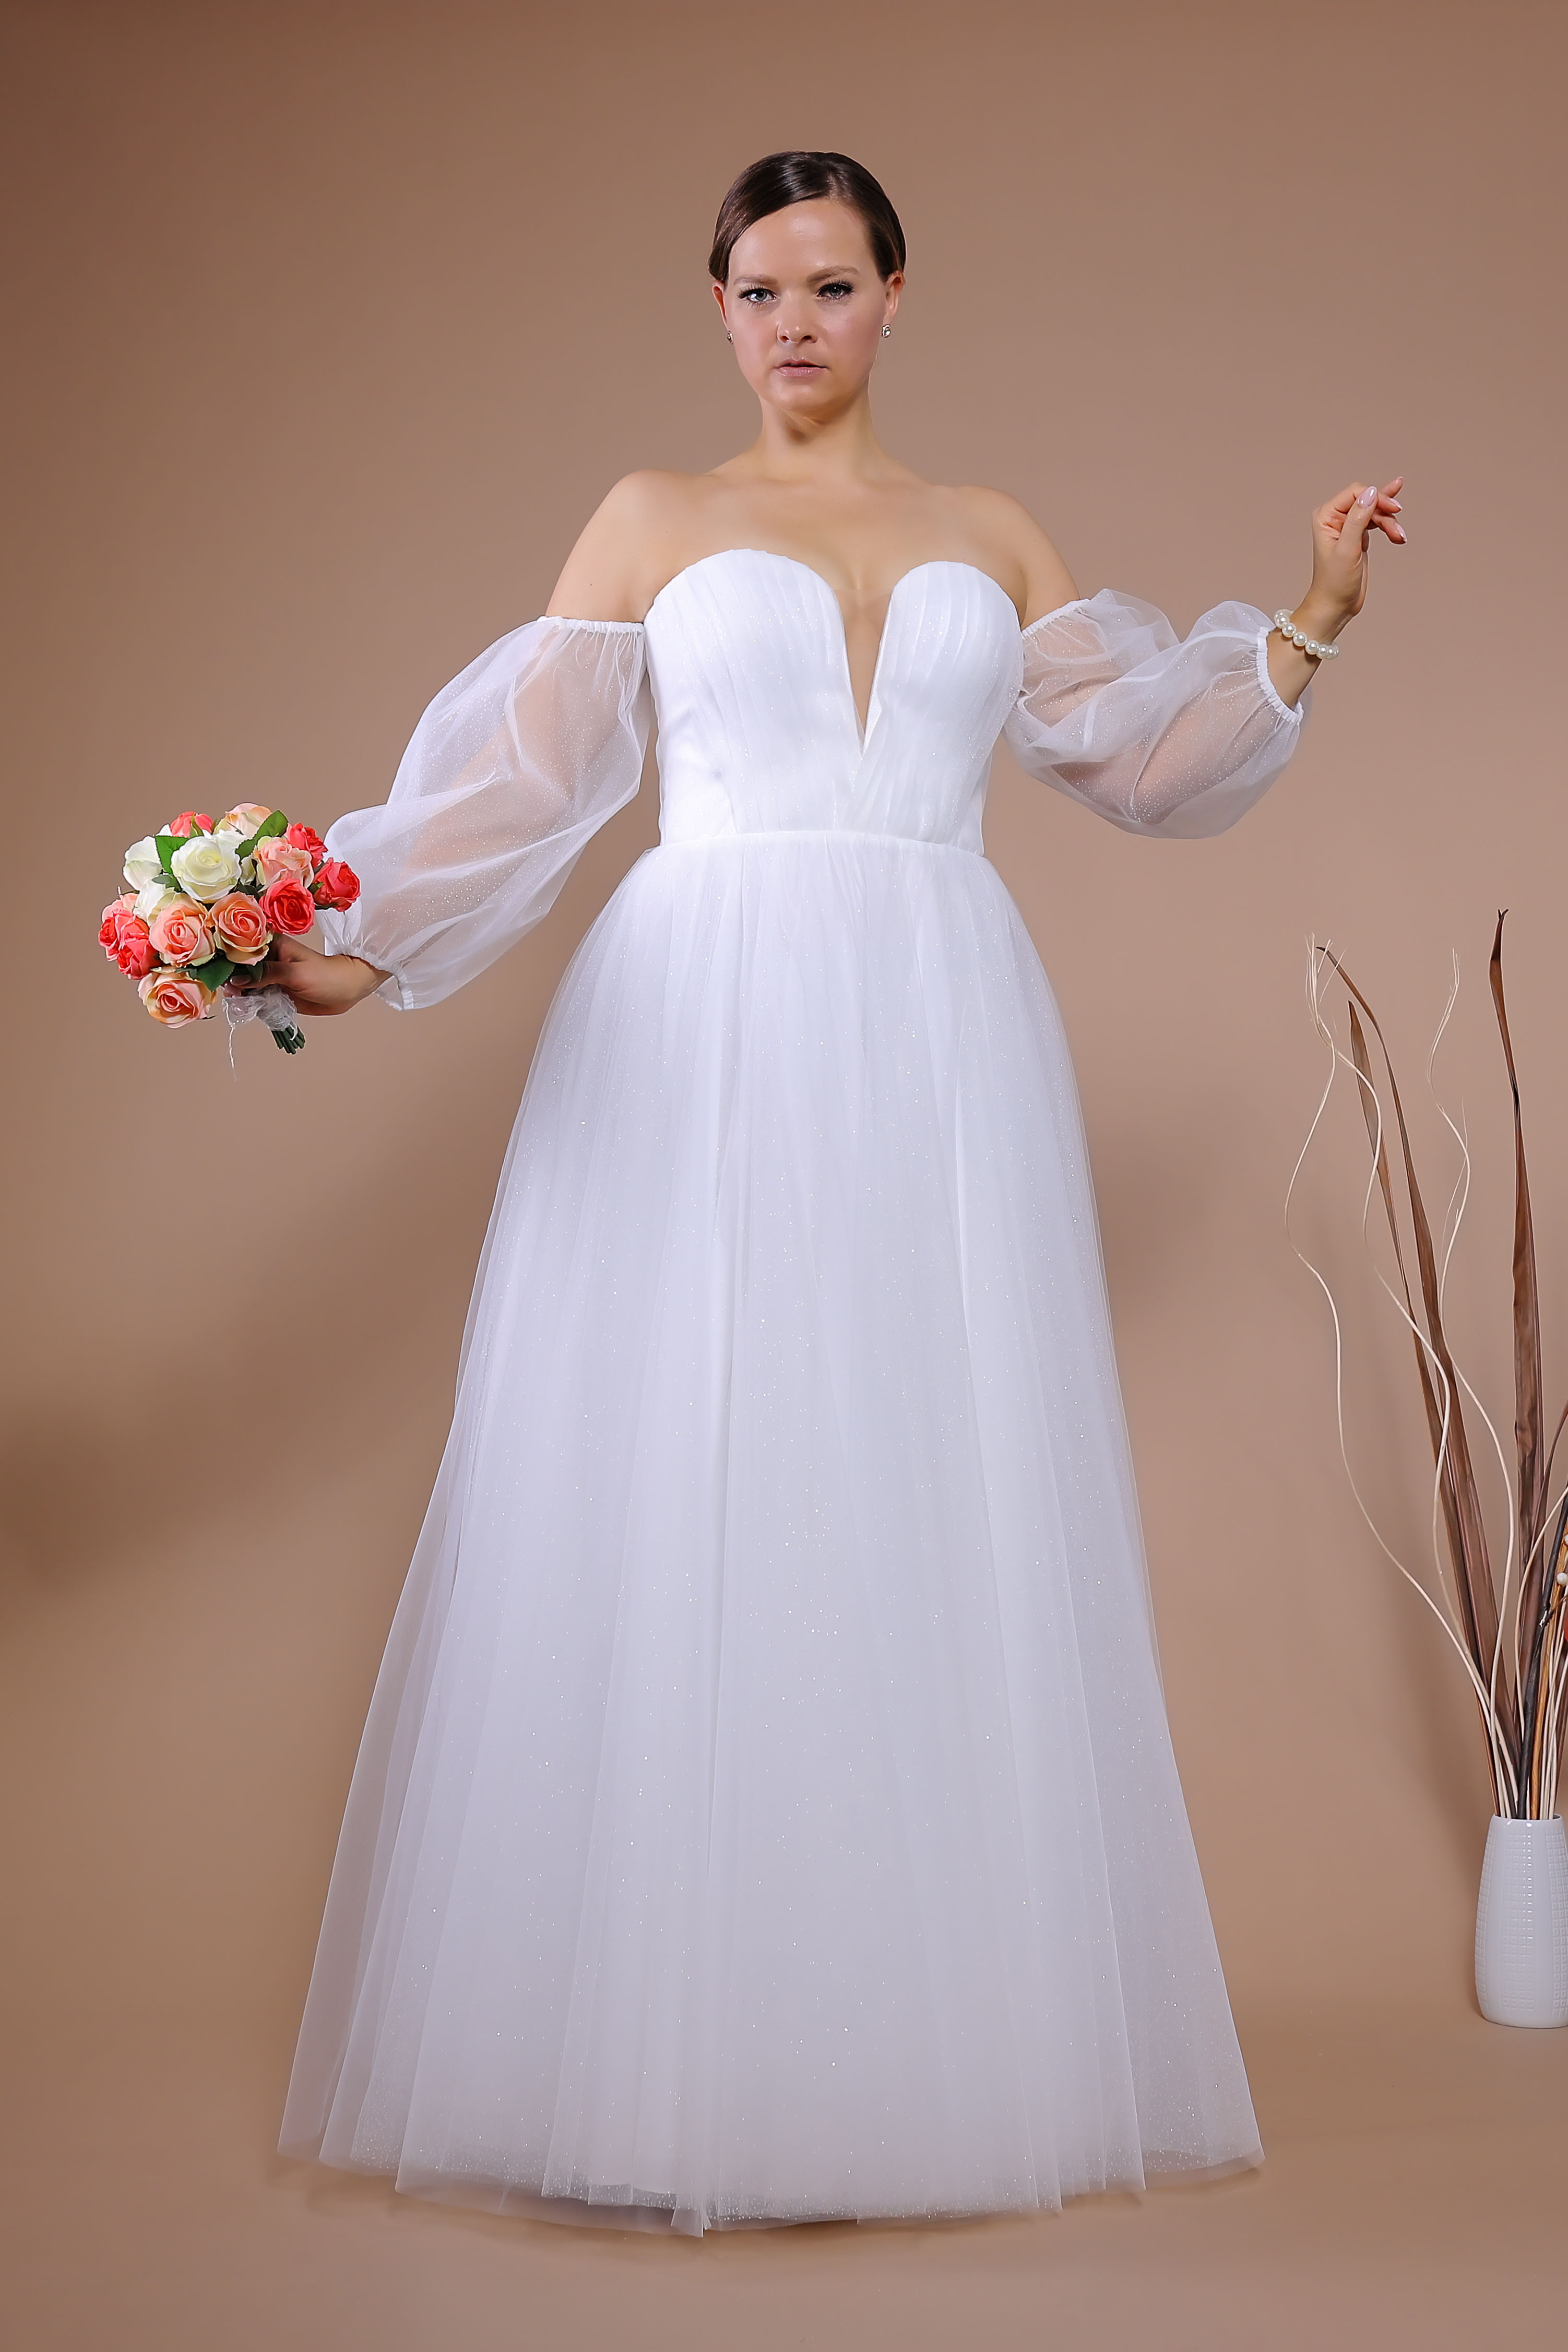 Schantal Brautkleid aus der Kollektion „Queen XXL“, Modell VA 1751 XXL. Foto 3